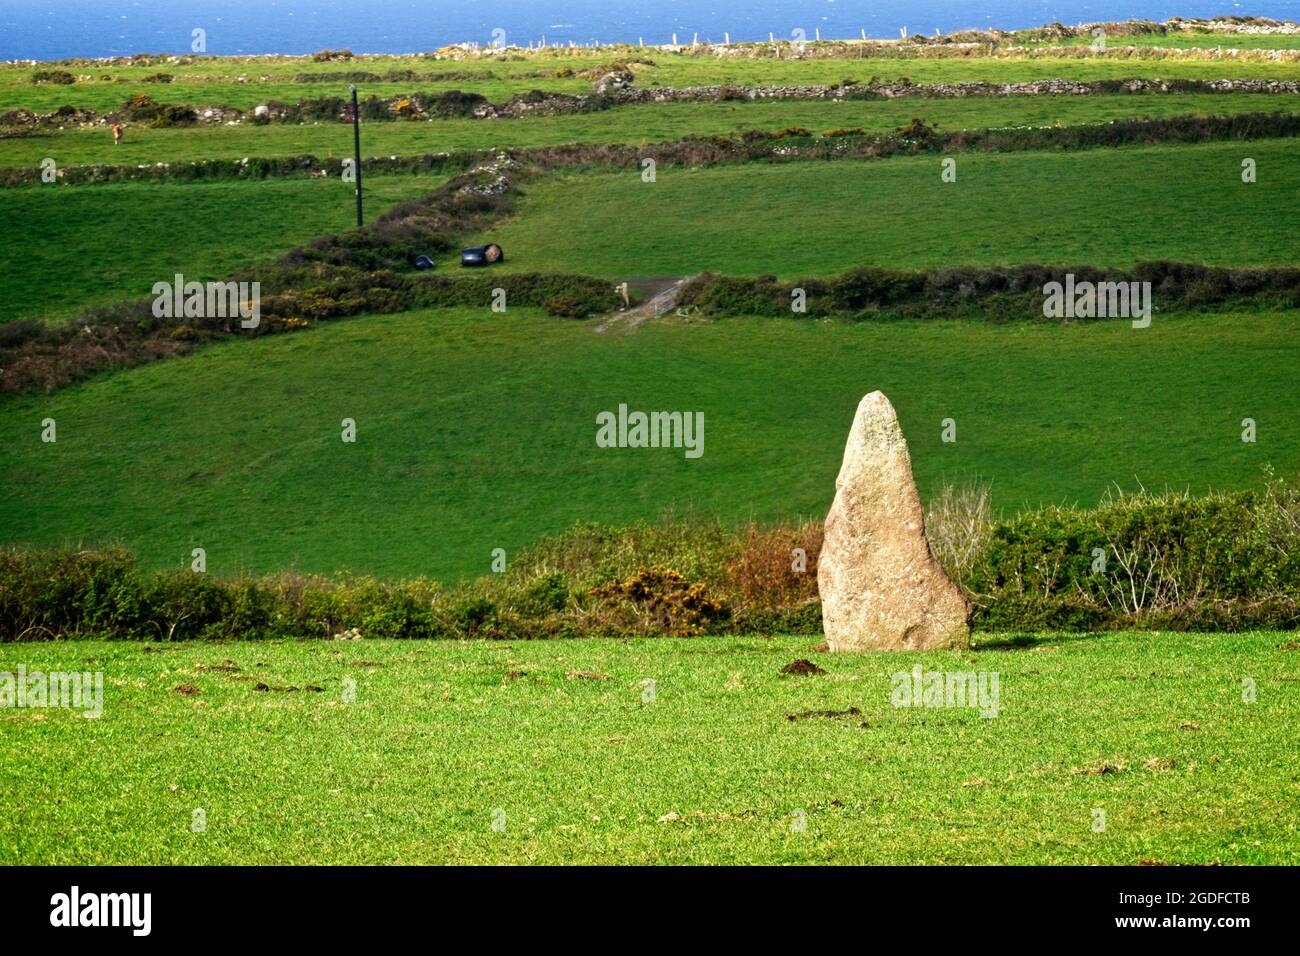 Stehender Stein auf einem Weidefeld, Nanquidno, Cornwall, England, Großbritannien. Stockfoto